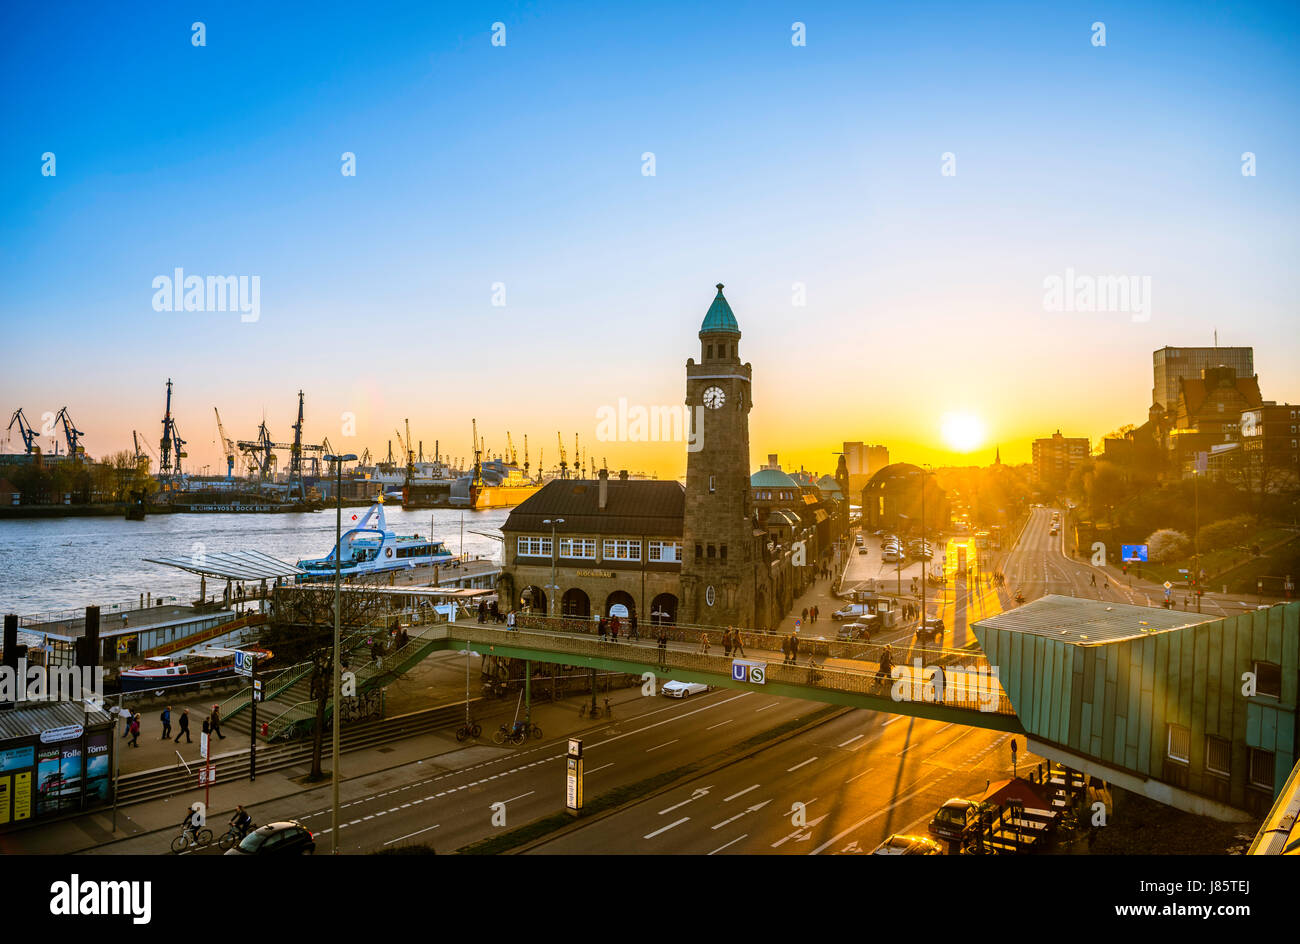 Uhrturm, Gauging Turm, St. Pauli Landung inszeniert mit Hafen bei Sonnenuntergang, Landung Stadien, Elbe, St. Pauli, Hamburg, Deutschland Stockfoto